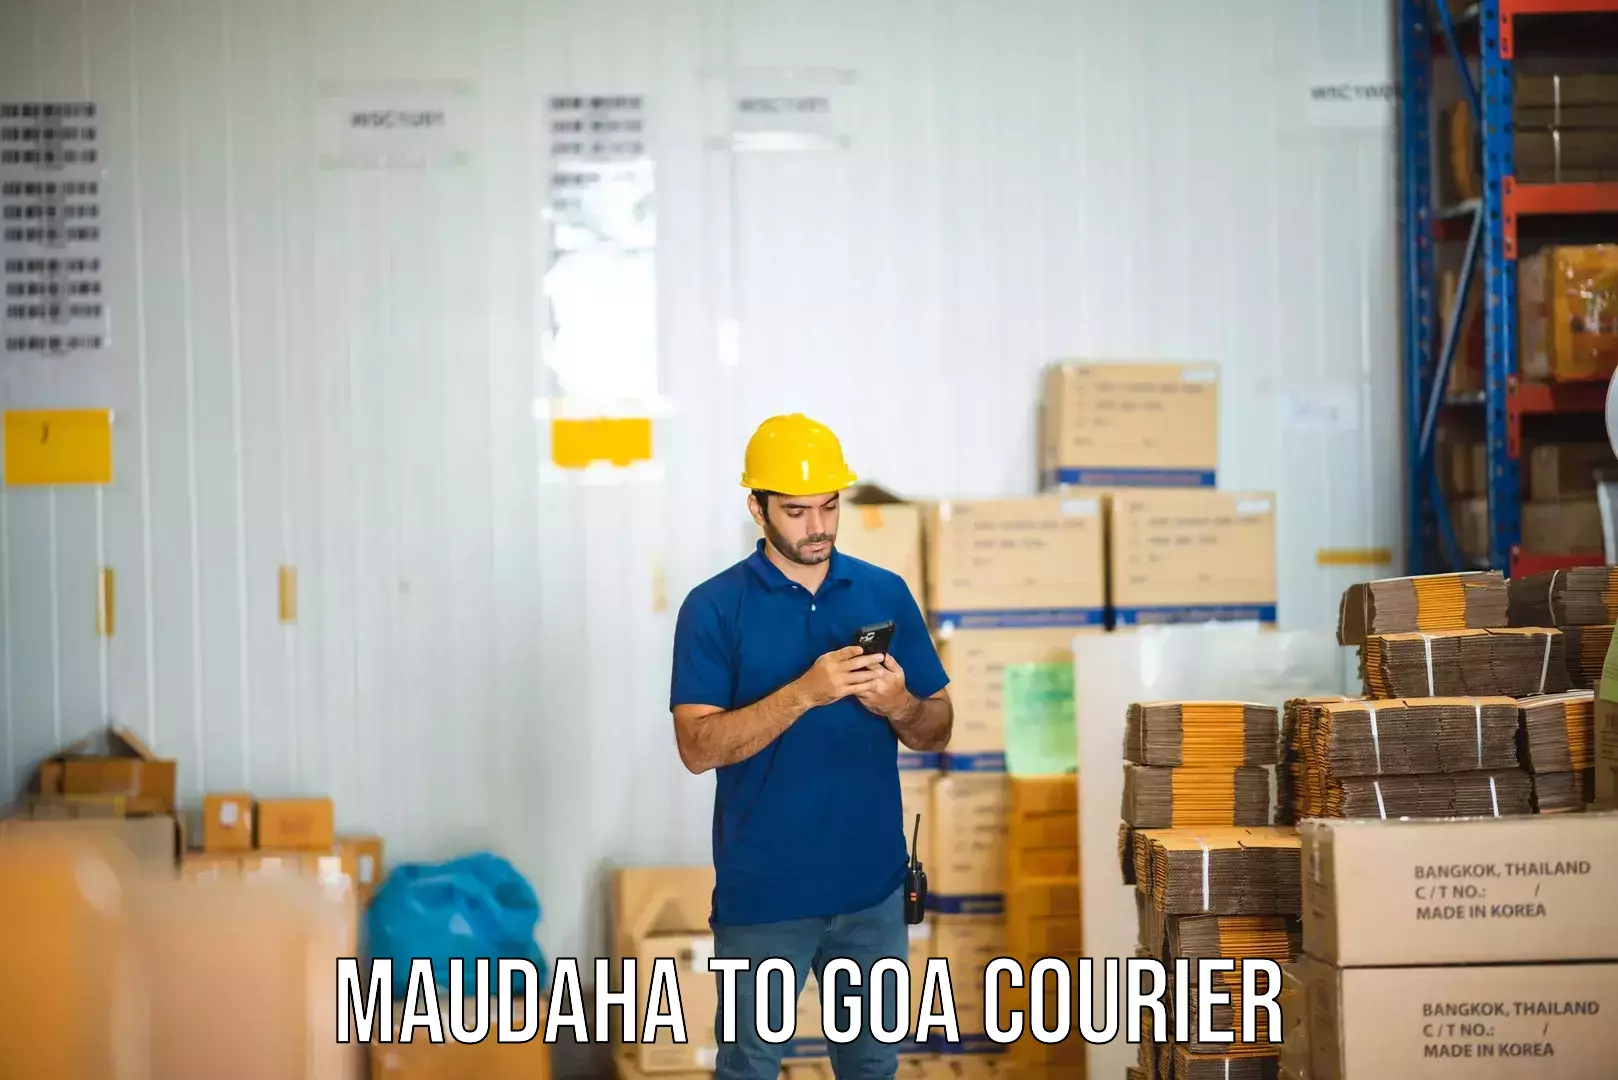 Discounted shipping in Maudaha to IIT Goa